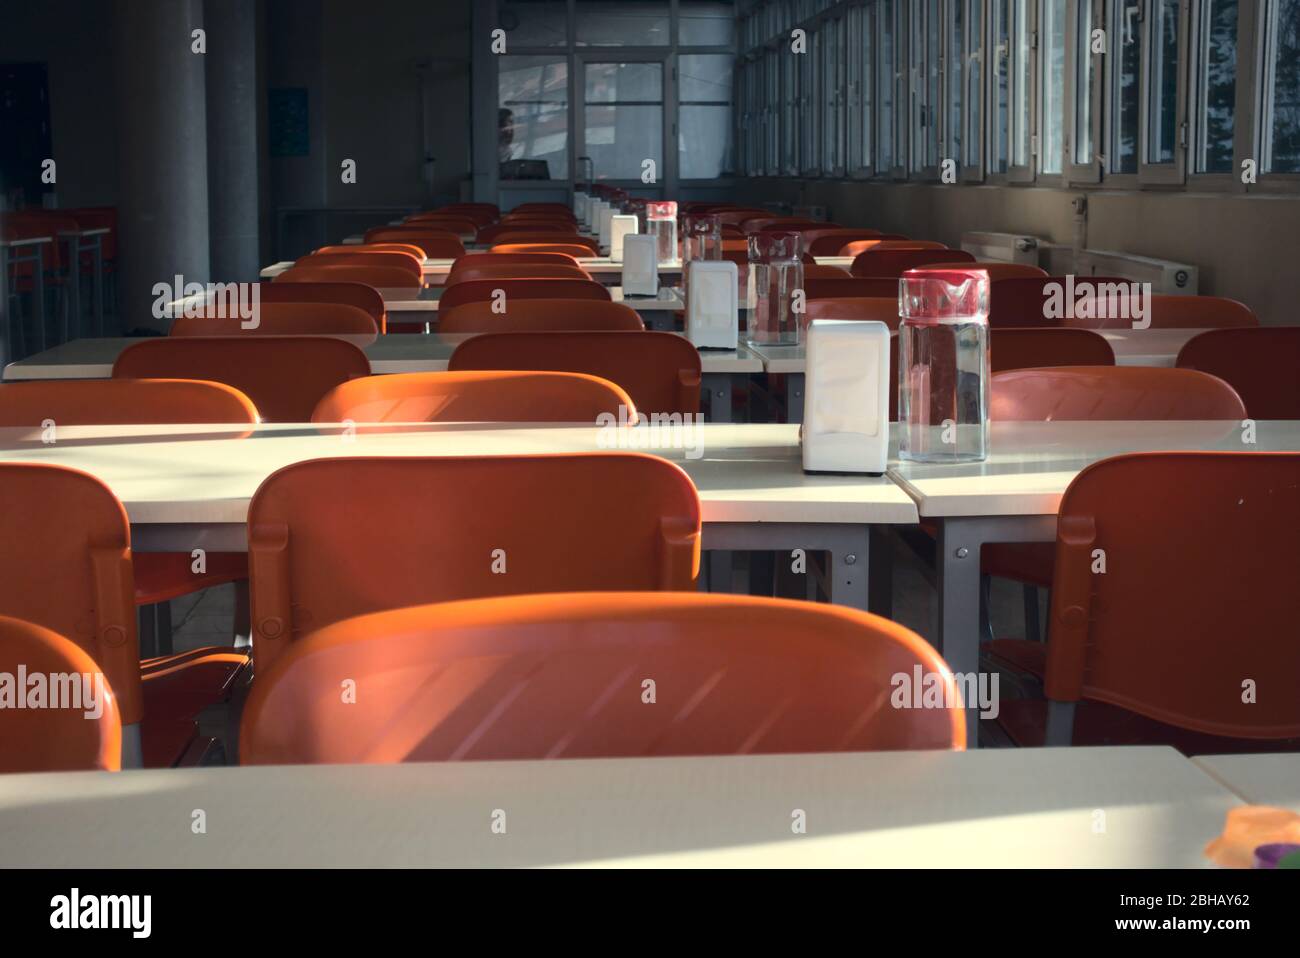 Gros plan de sièges rouges vides d'une cafétéria universitaire après la fermeture des écoles Banque D'Images